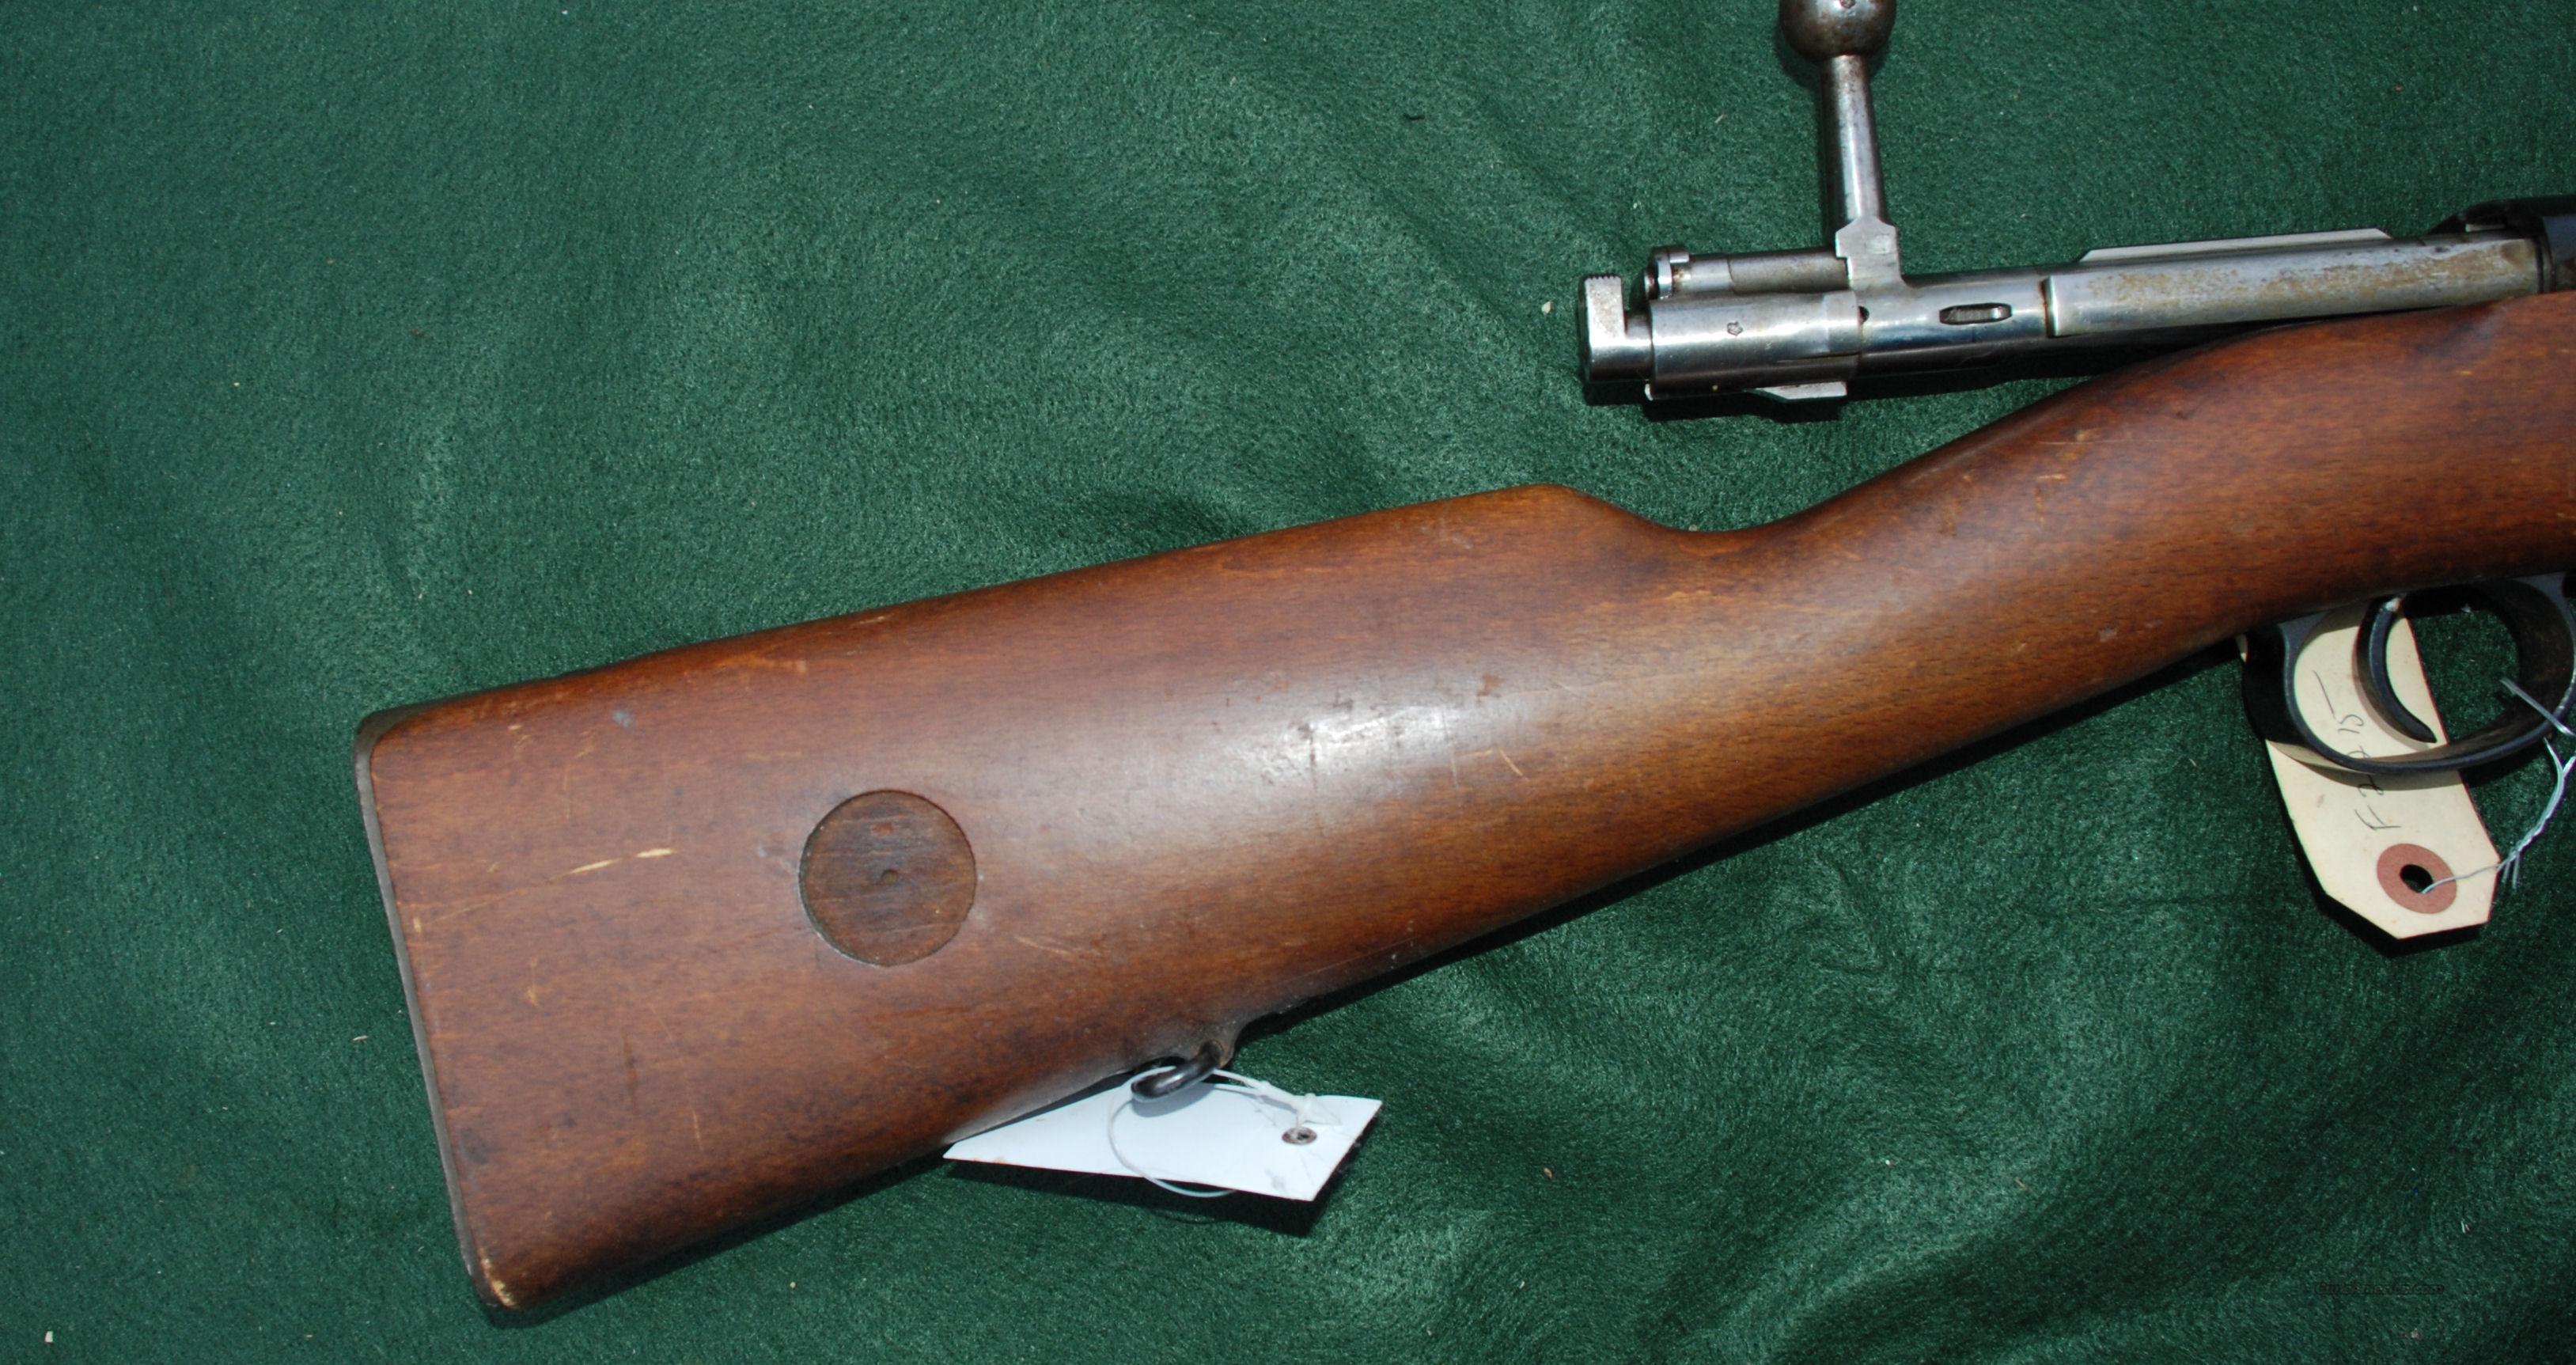 husqvarna rifles 1943